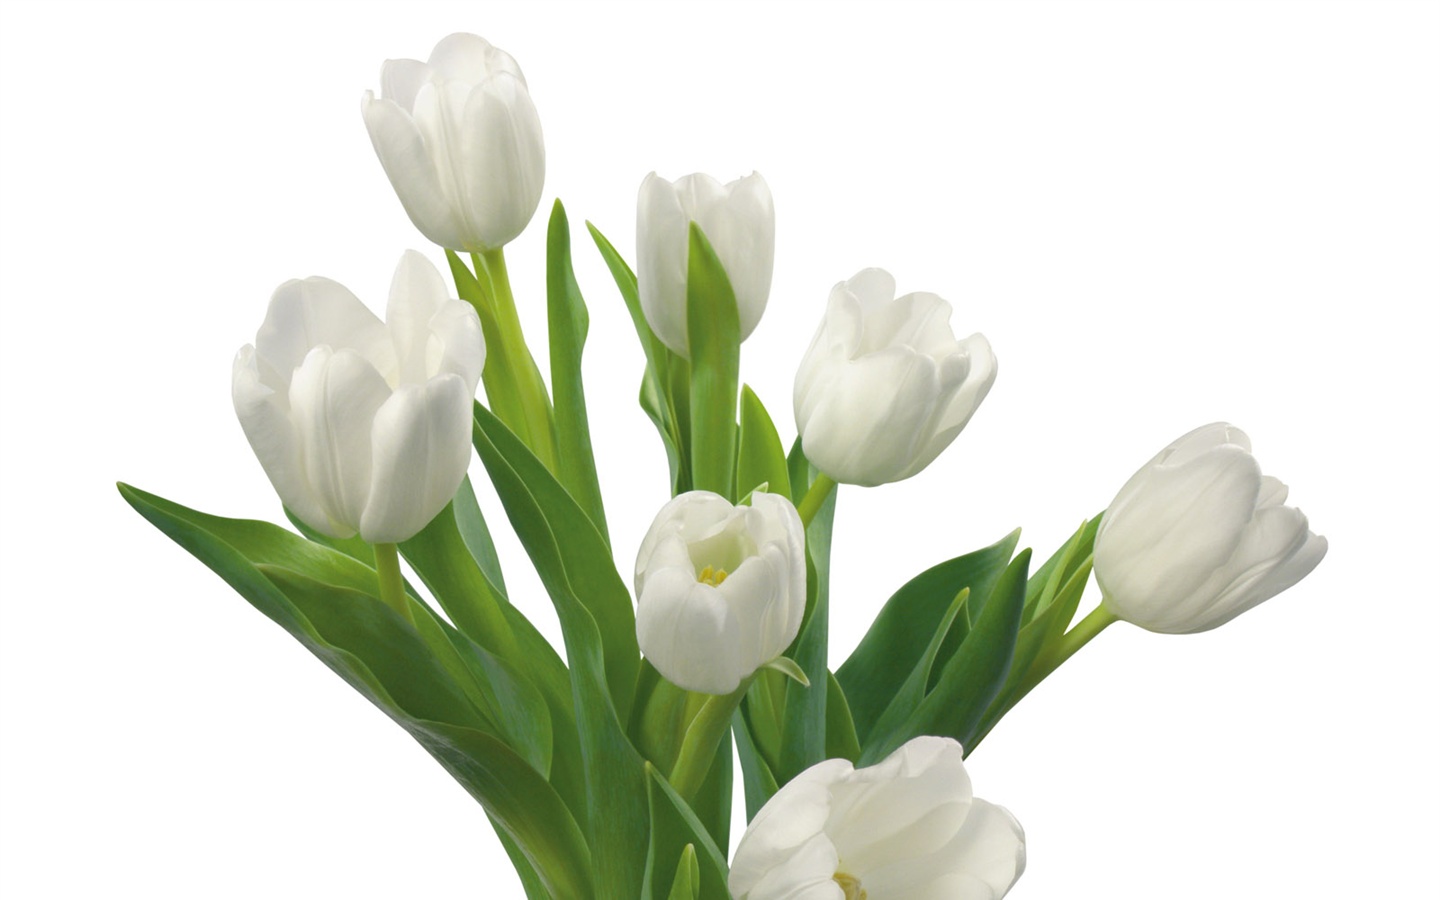 눈같이 흰 꽃 벽지 #11 - 1440x900